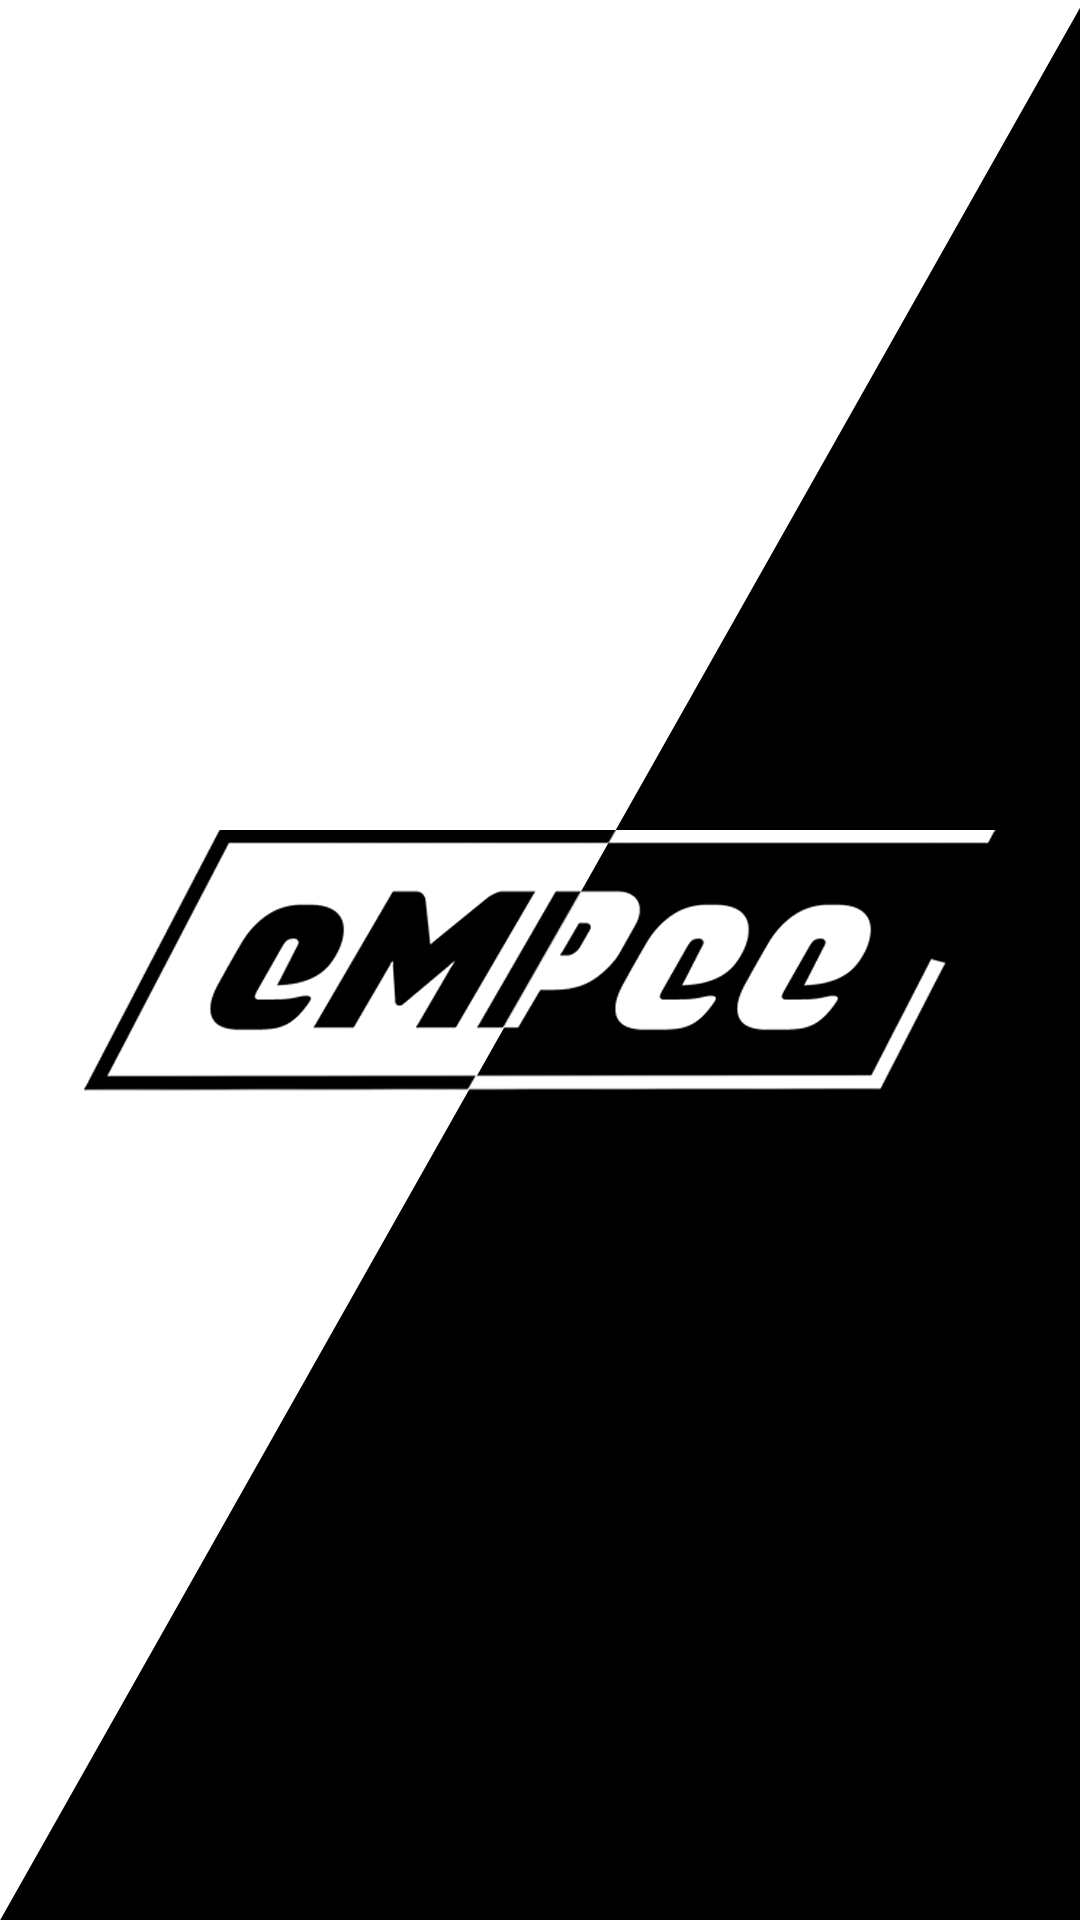 eMPee original